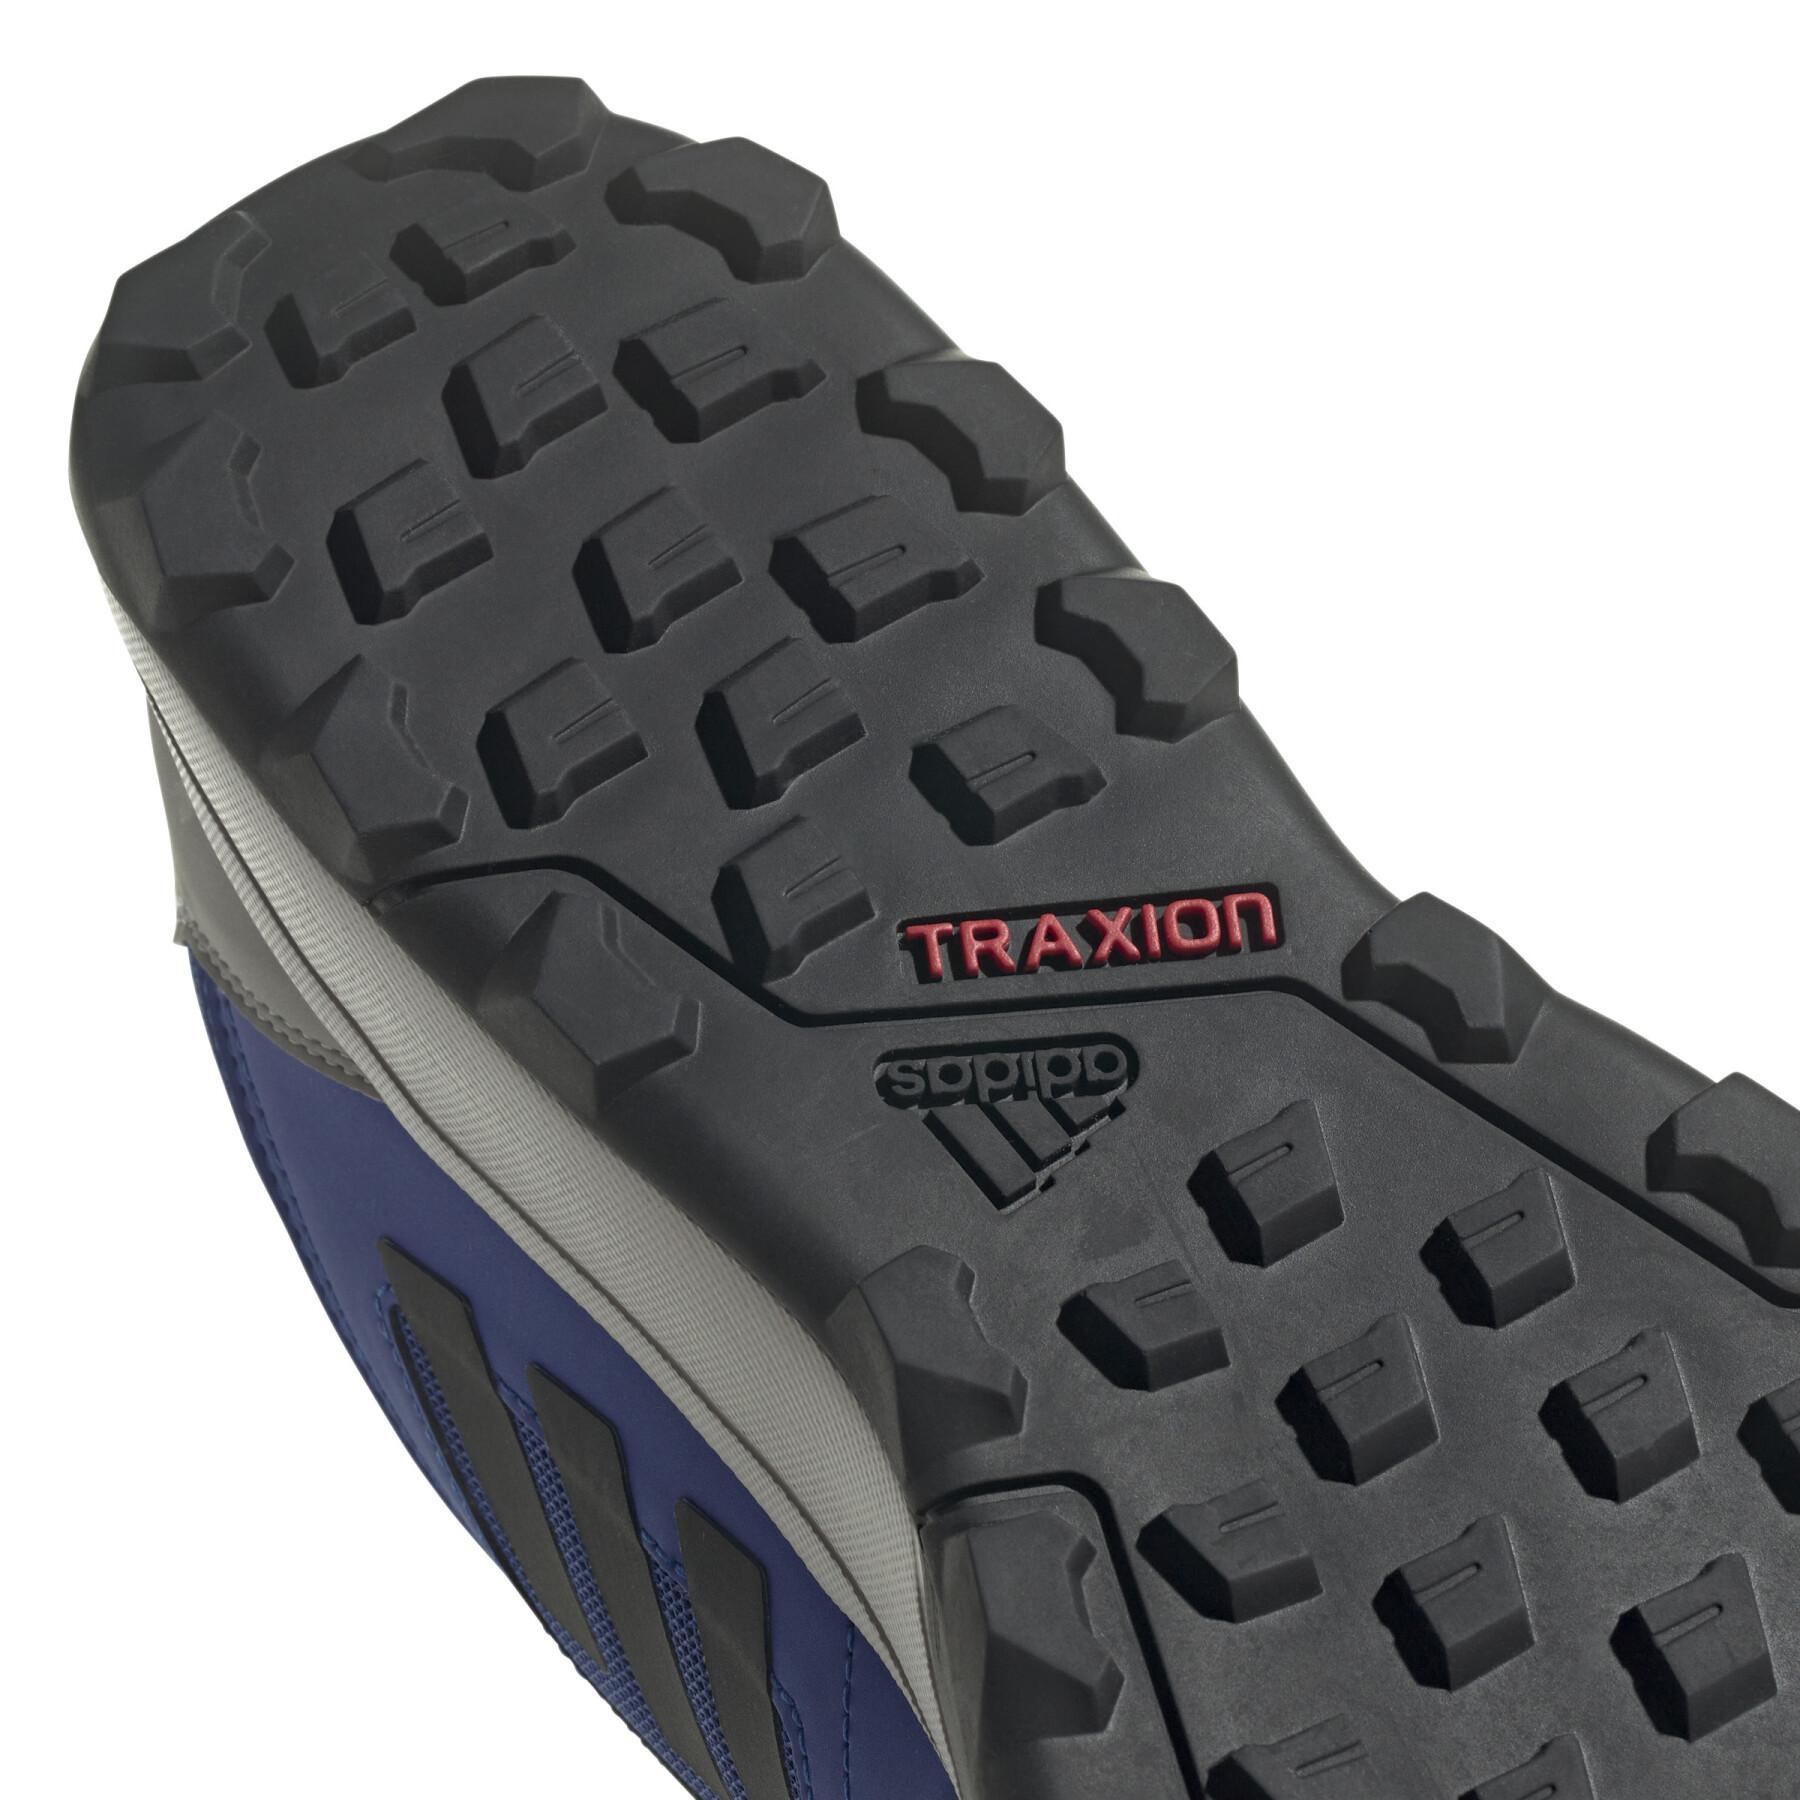 Chaussures de trail adidas Terrex Agravic GORE-TEX